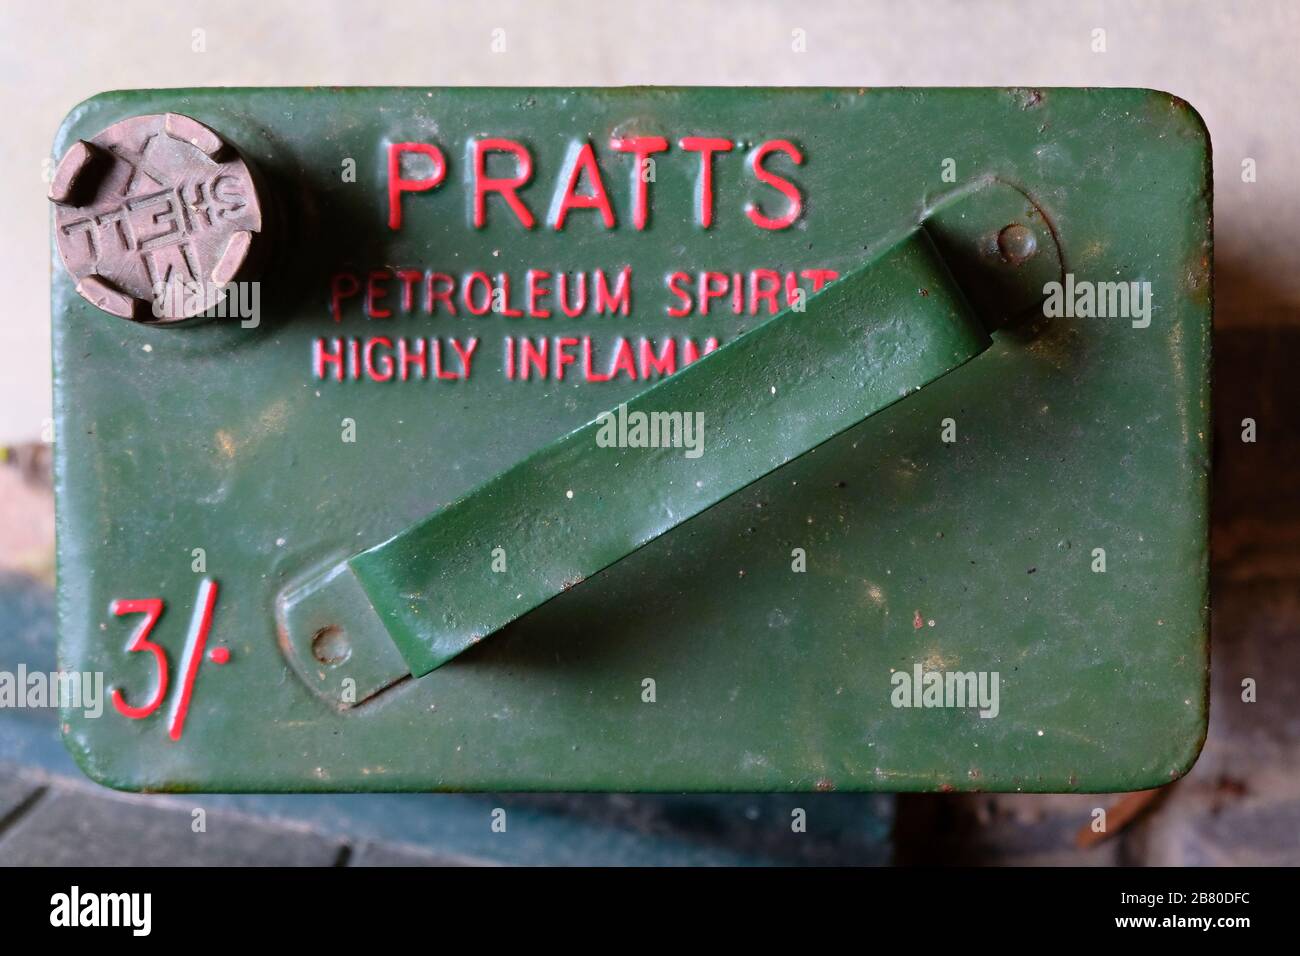 Nahaufnahme der Oberseite eines Pratt's Vintage Petrol kann sich als leicht entzündlich markieren Stockfoto